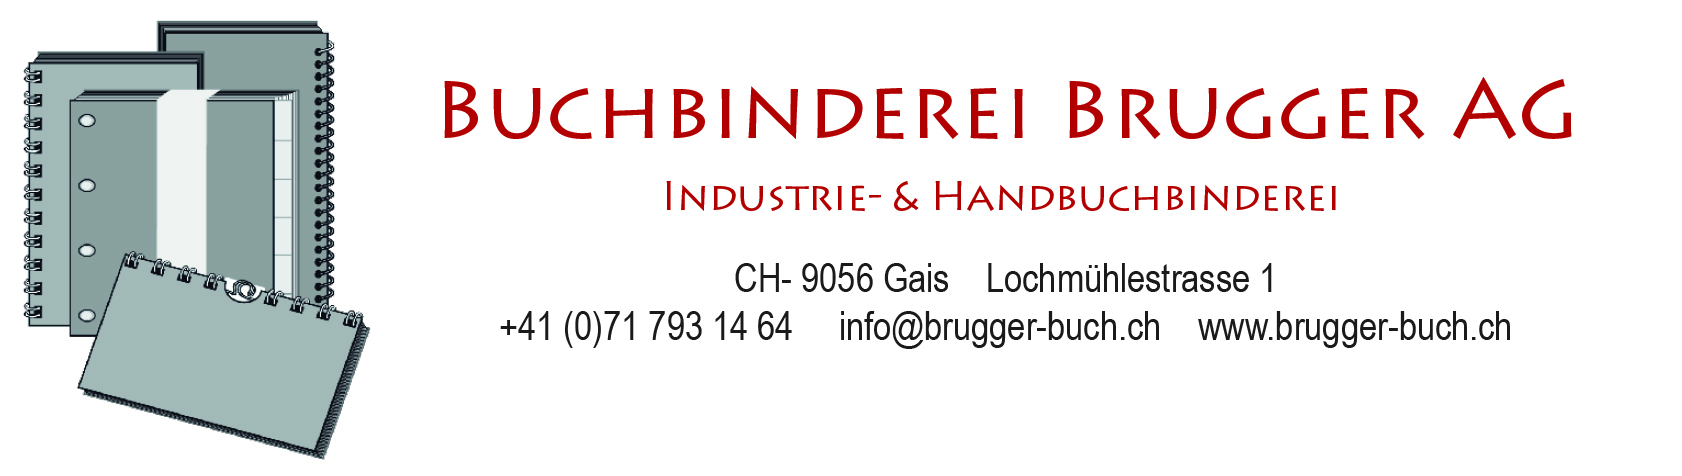 Buchbinderei Brugger AG  Infoniqa ONE 200